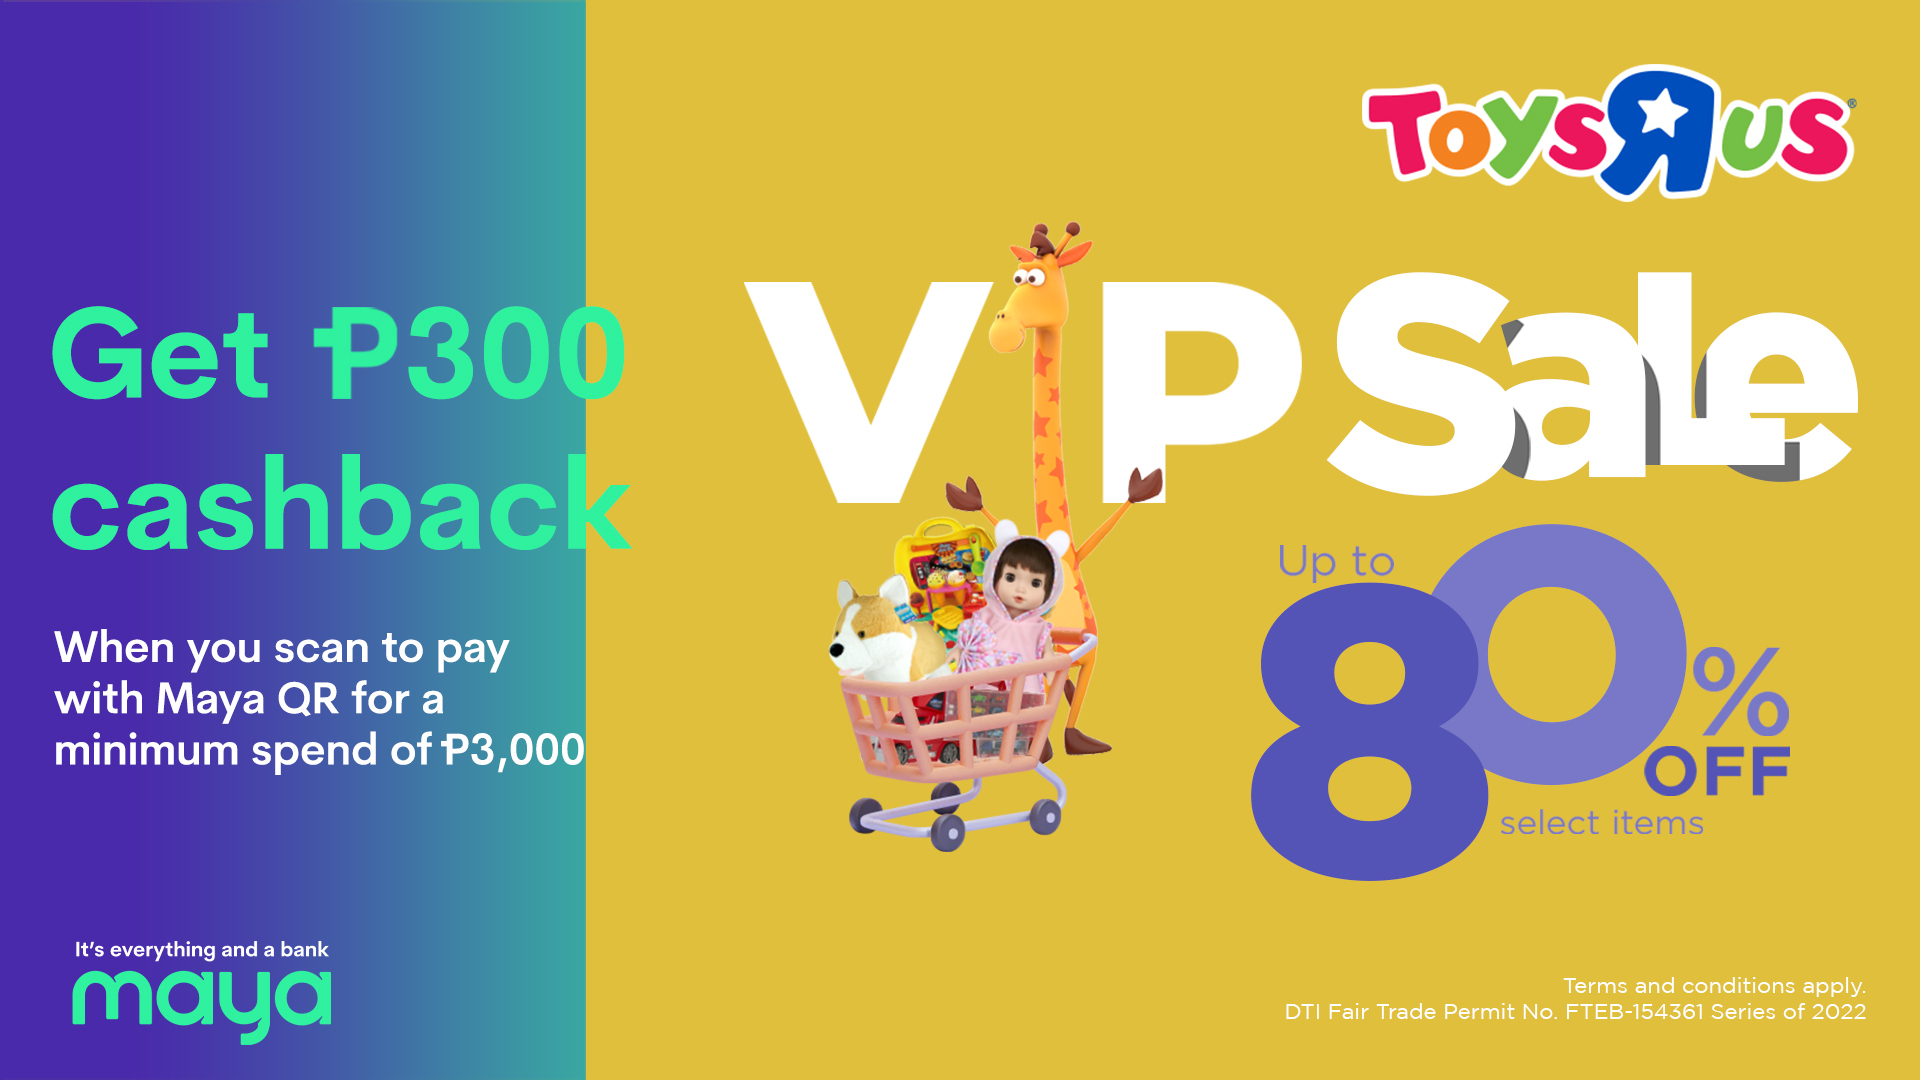 102622 - Maya - EN - toys r us VIP deals card_deals page